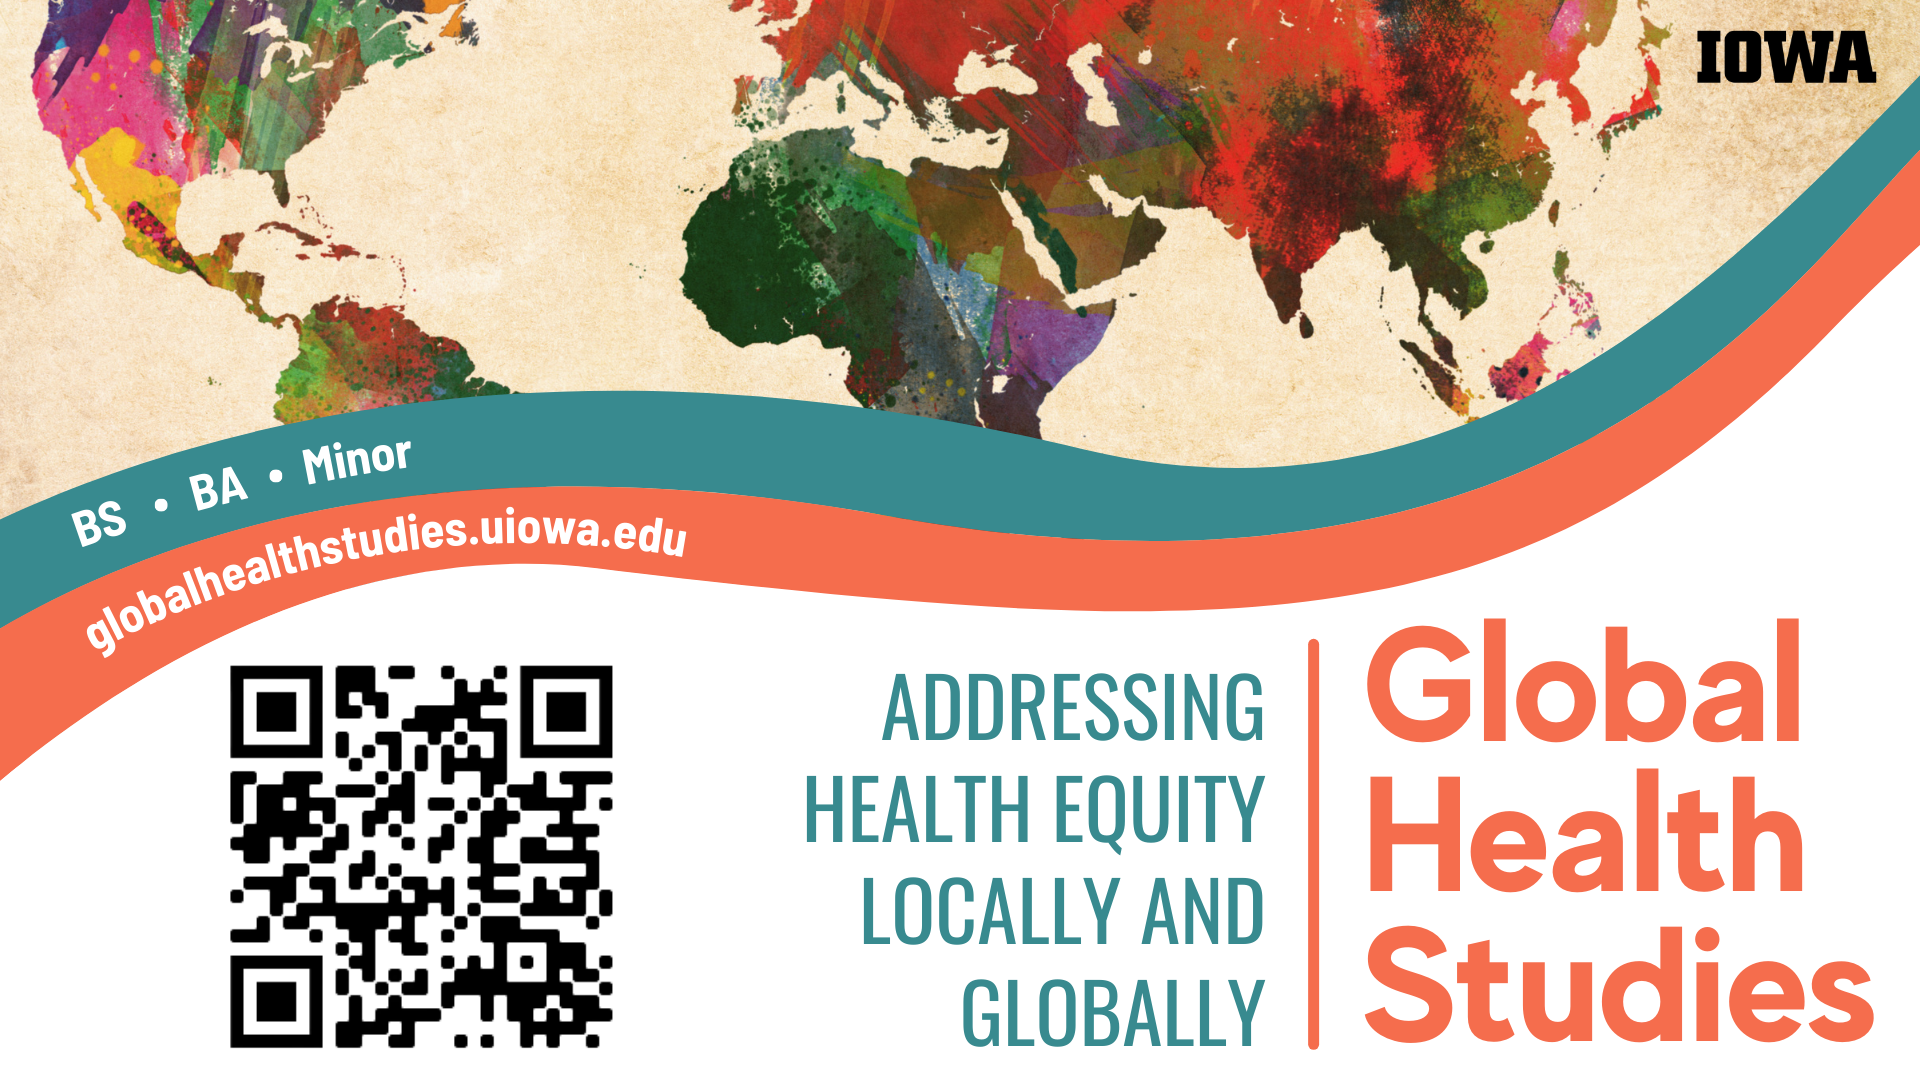 Global Health Studies BS, BA, Minor: globalhealthstudies.uiowa.edu